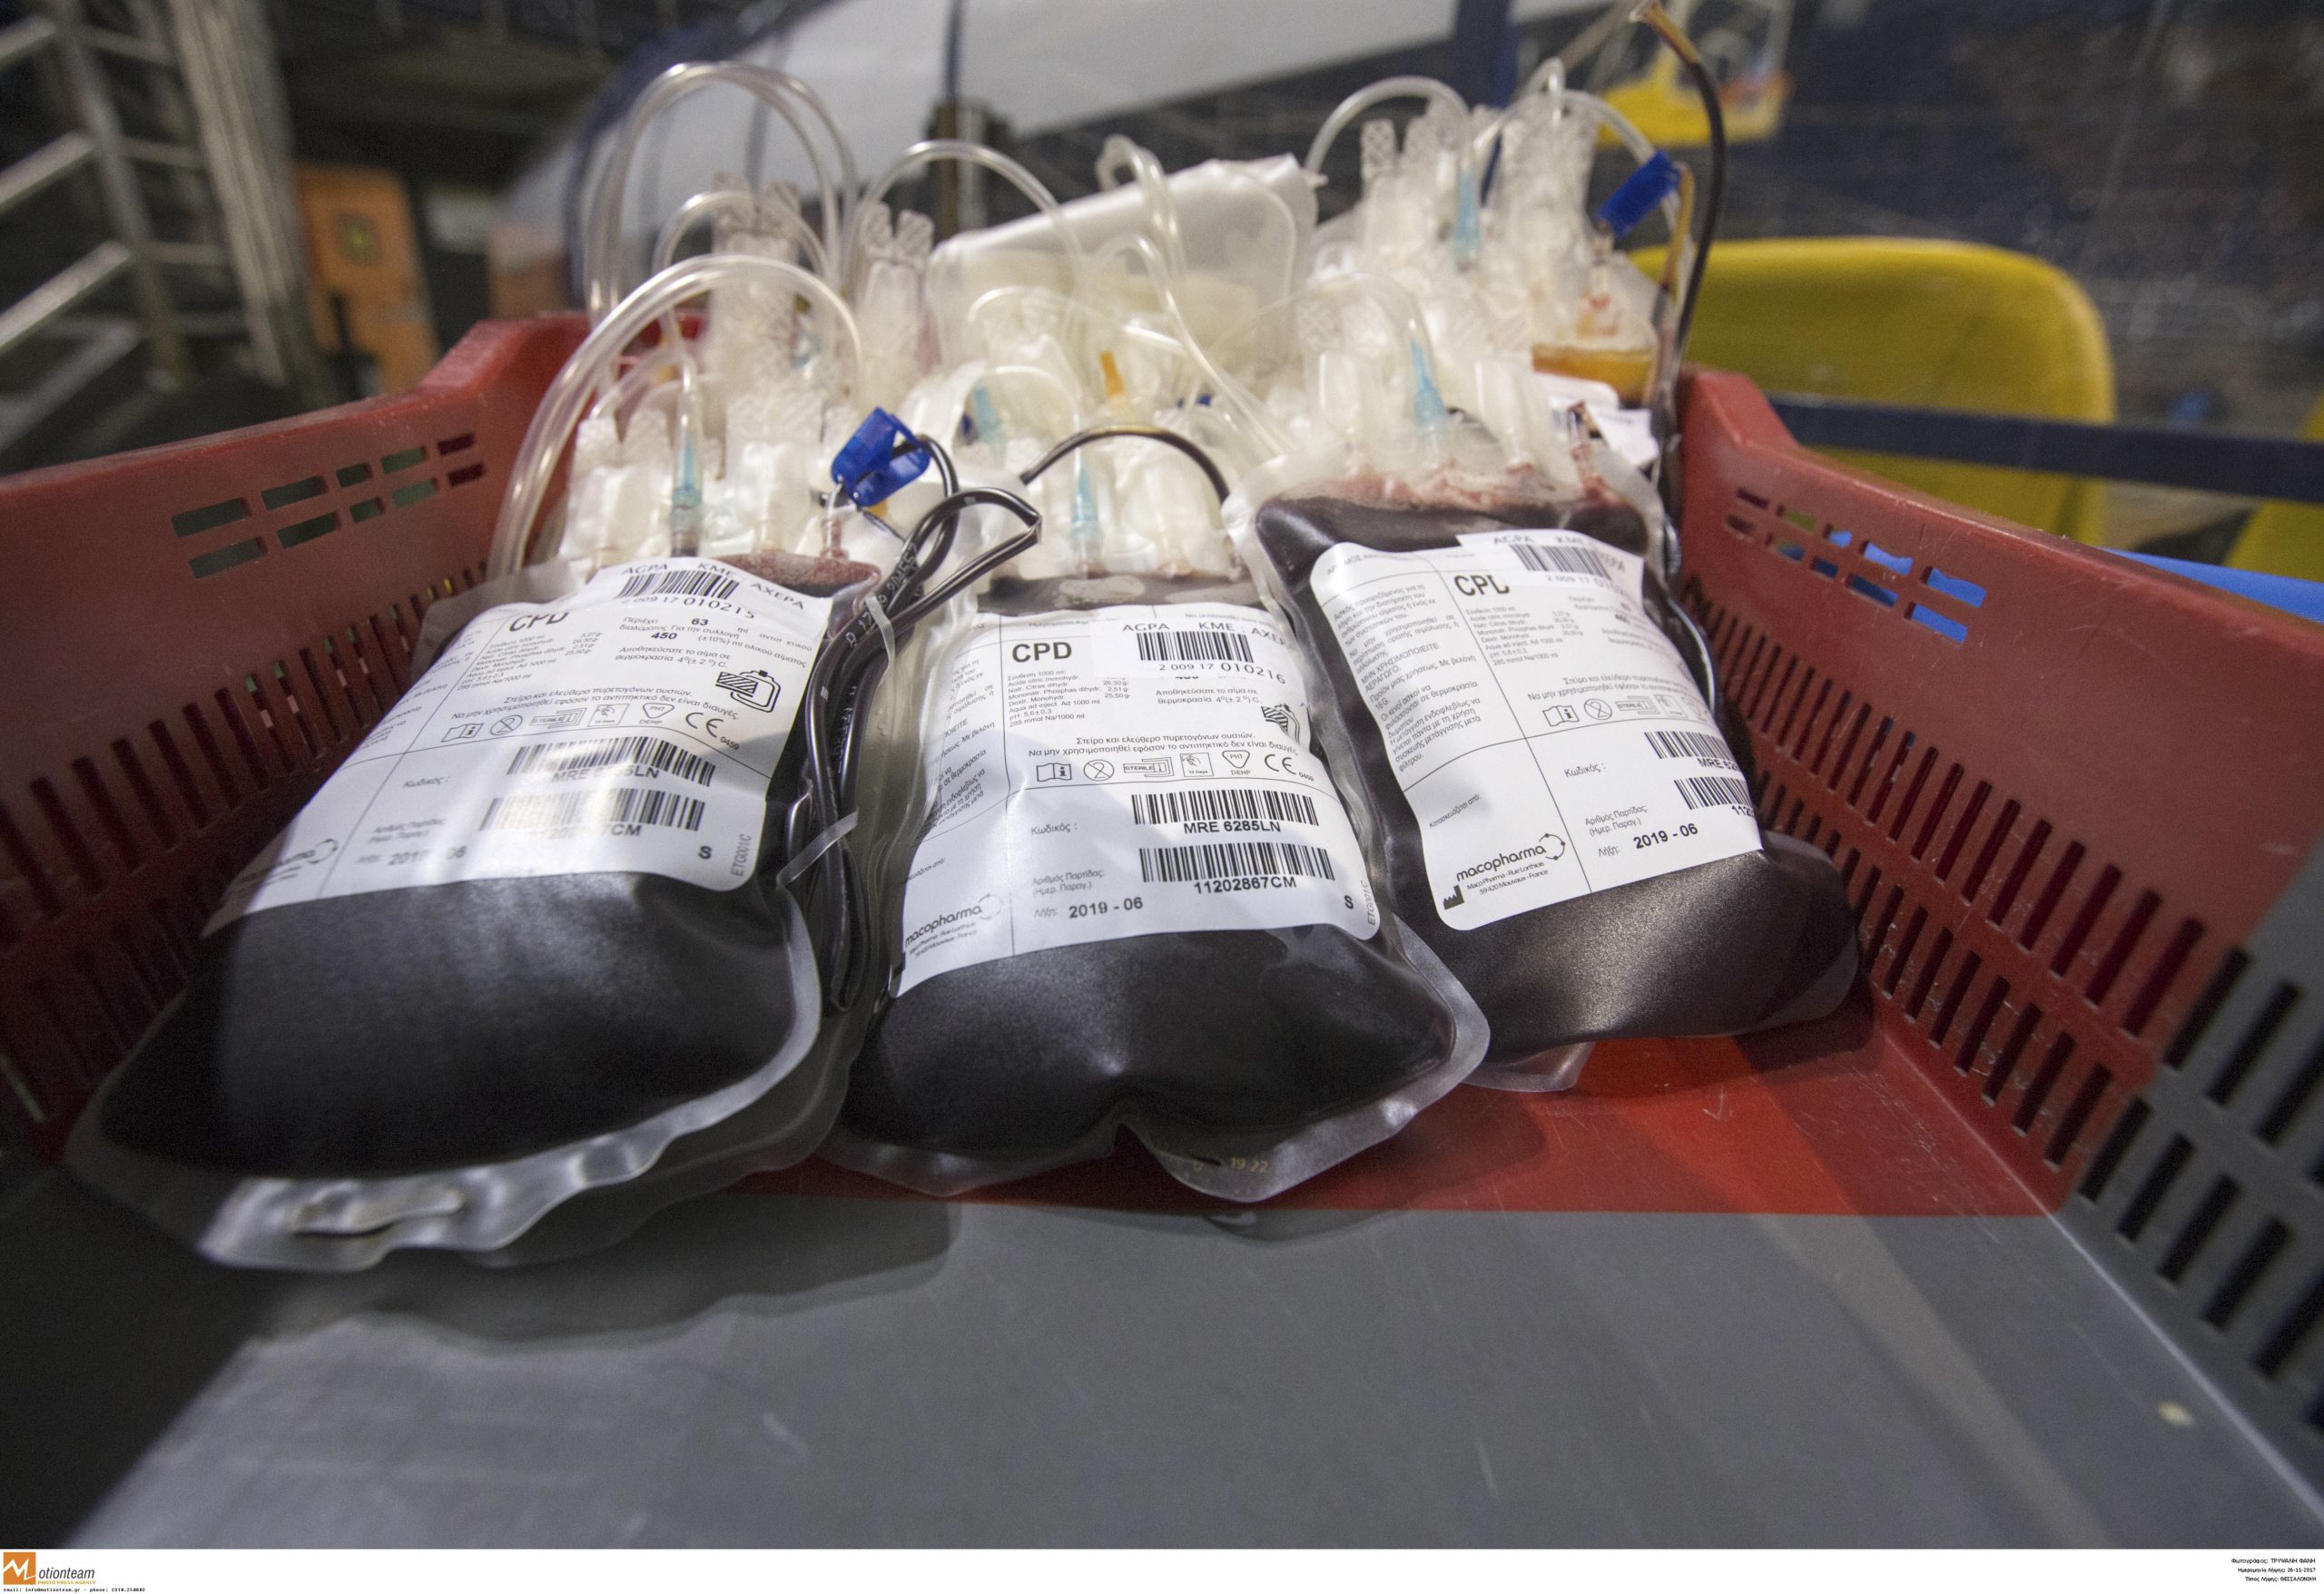 ΕΚΕΑ: Μεγάλη μείωση των αποθεμάτων αίματος – Πενθήμερη εθελοντική αιμοδοσία στο Μετρό Συντάγματος